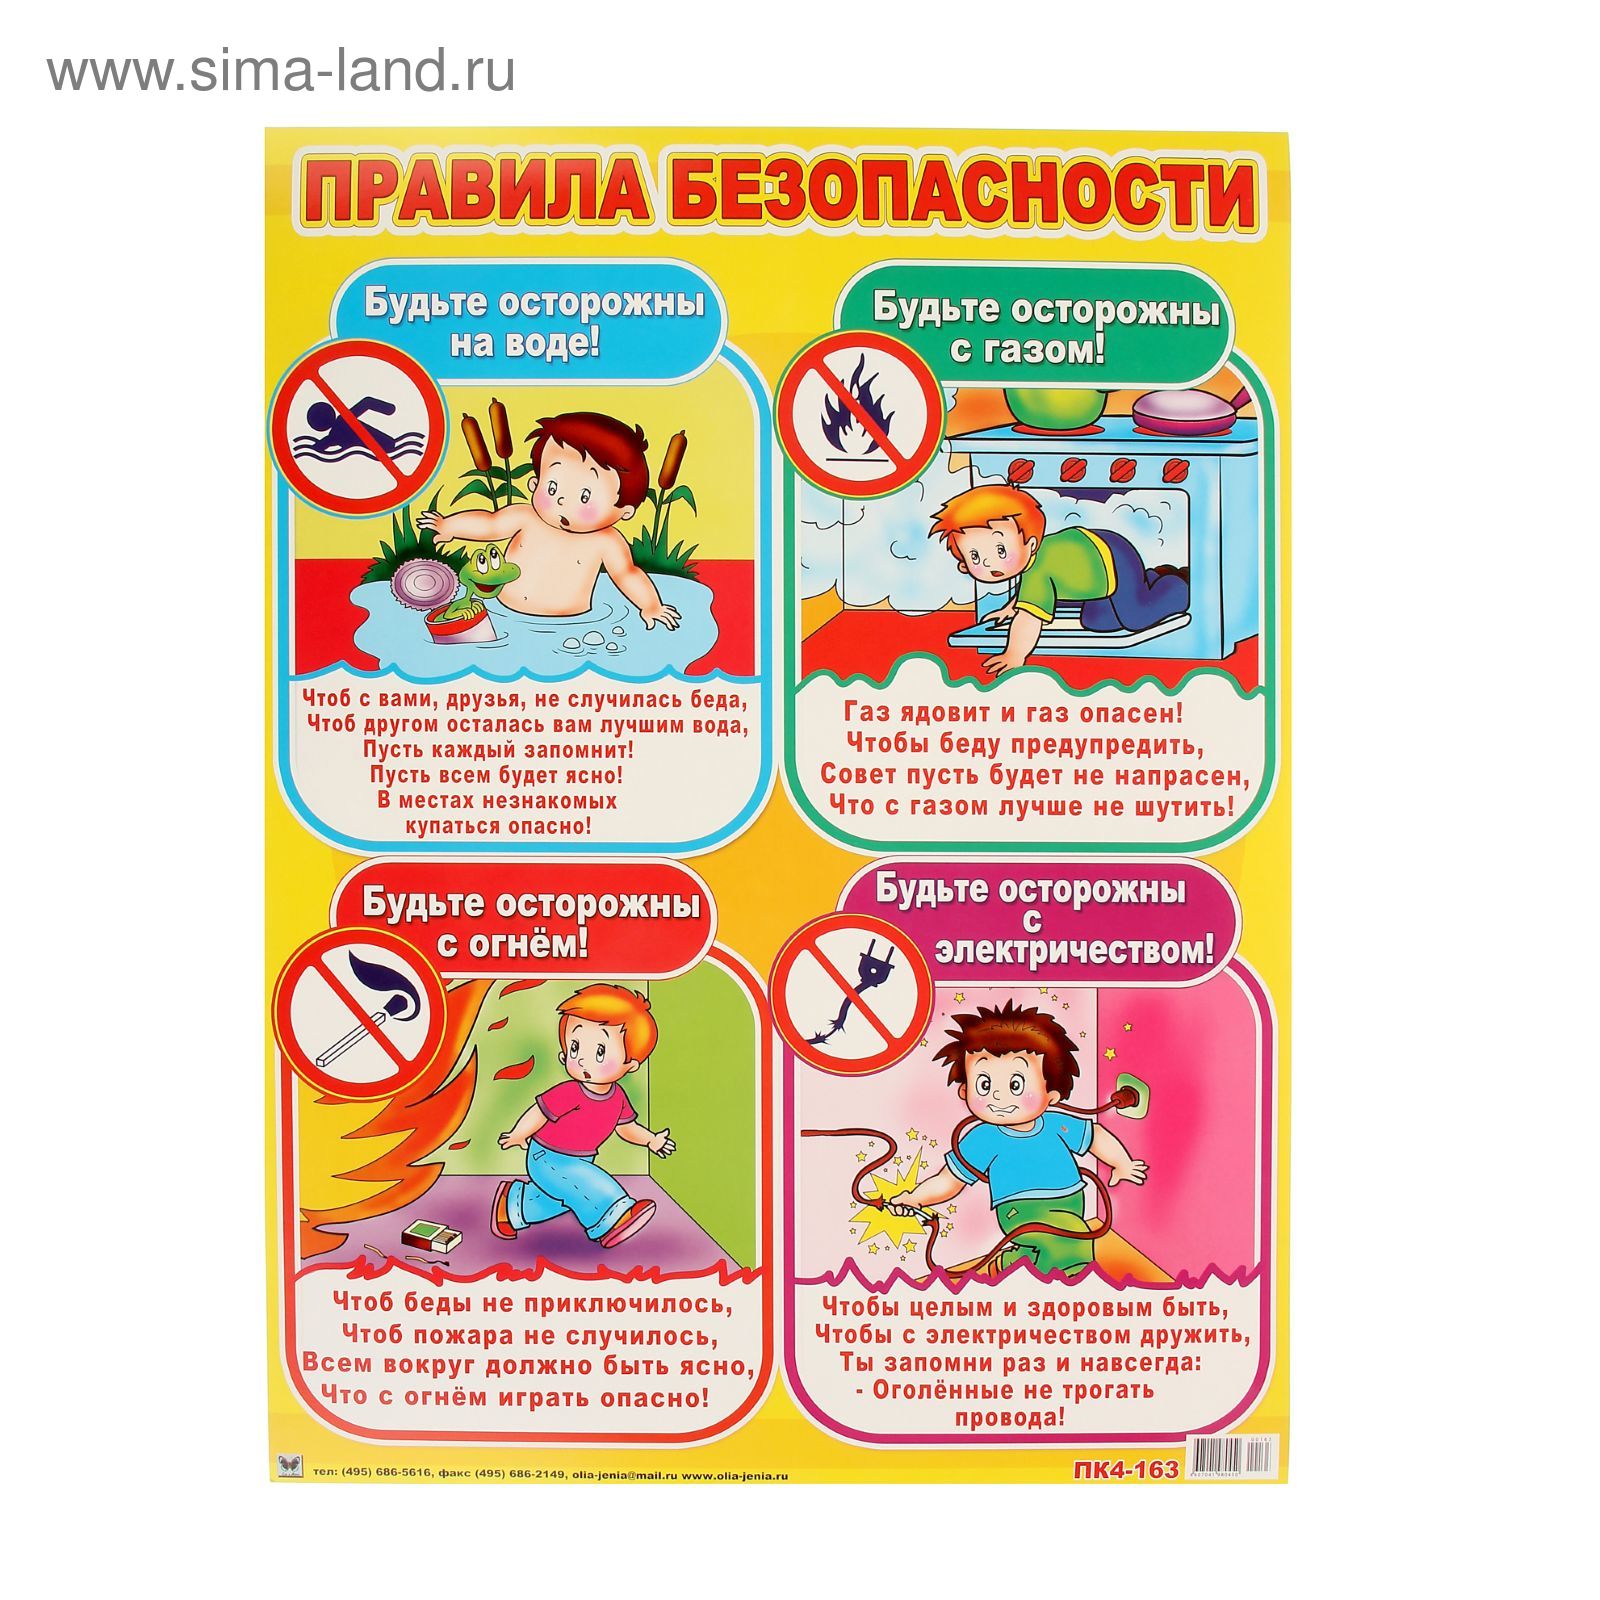 Правила безопасности для начальной школы. Плакаты безопасности для школьников. Правила безопасности для школьников. Правила безопасности для школьников в картинках. Плакат правила безопасности для детей.